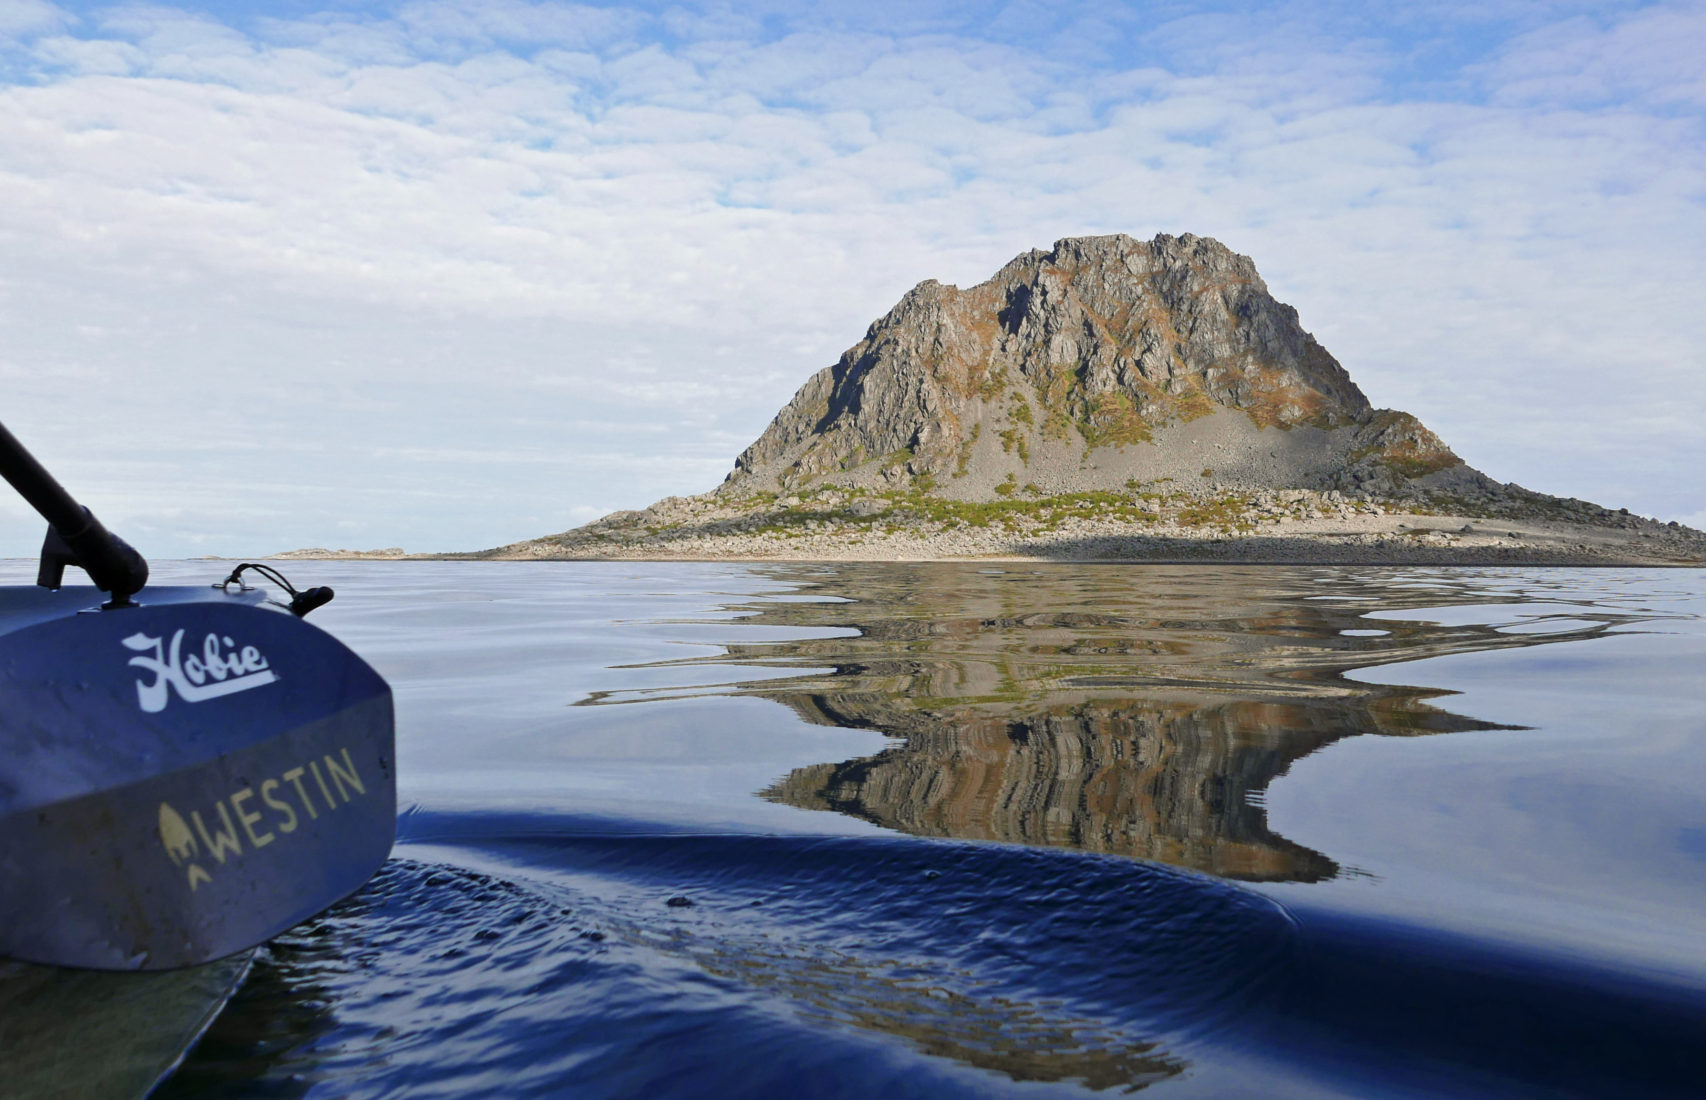 Sola-Vega-Norway-kayak-fishing